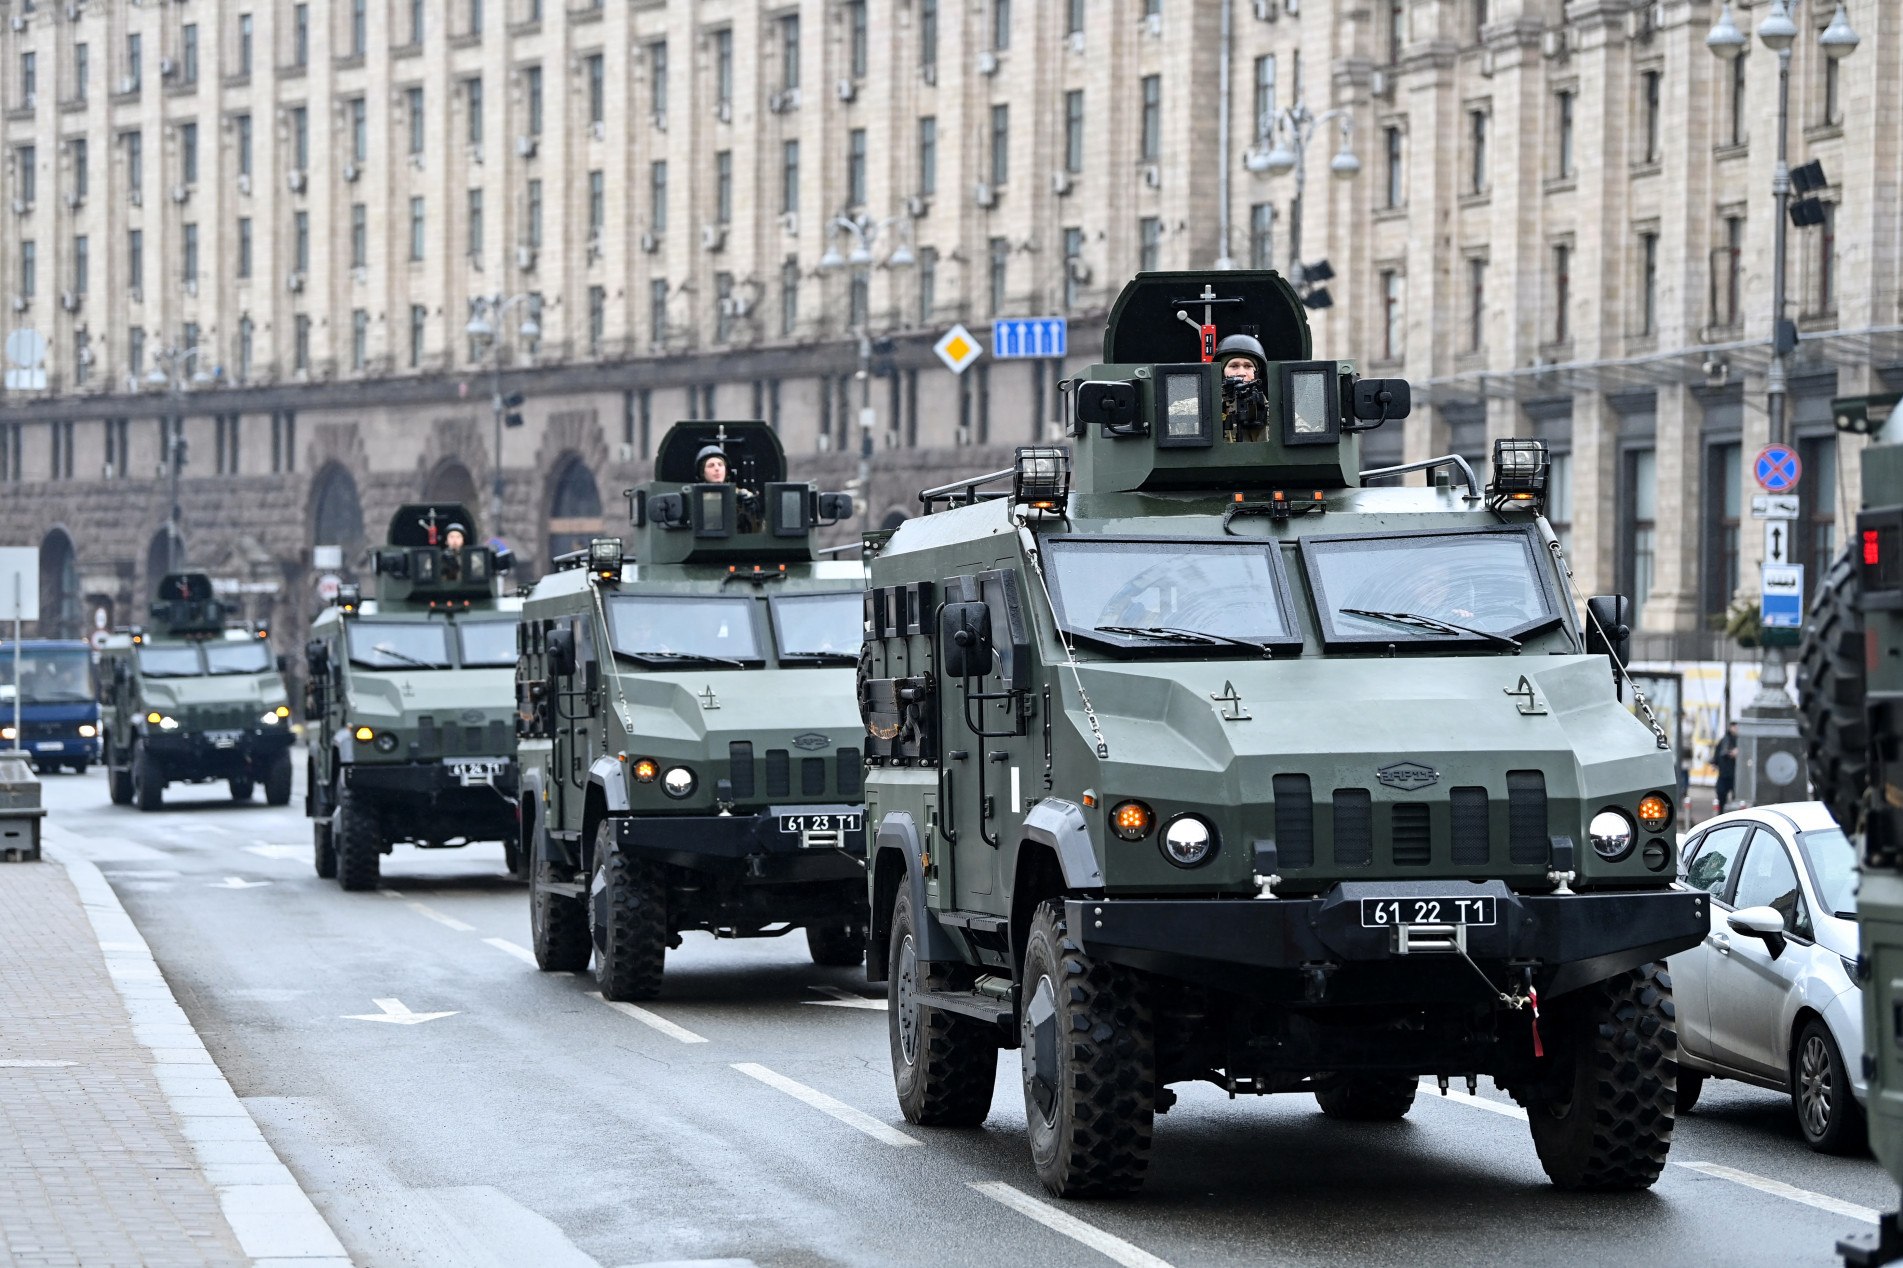  Veículos militares na Ucrânia    